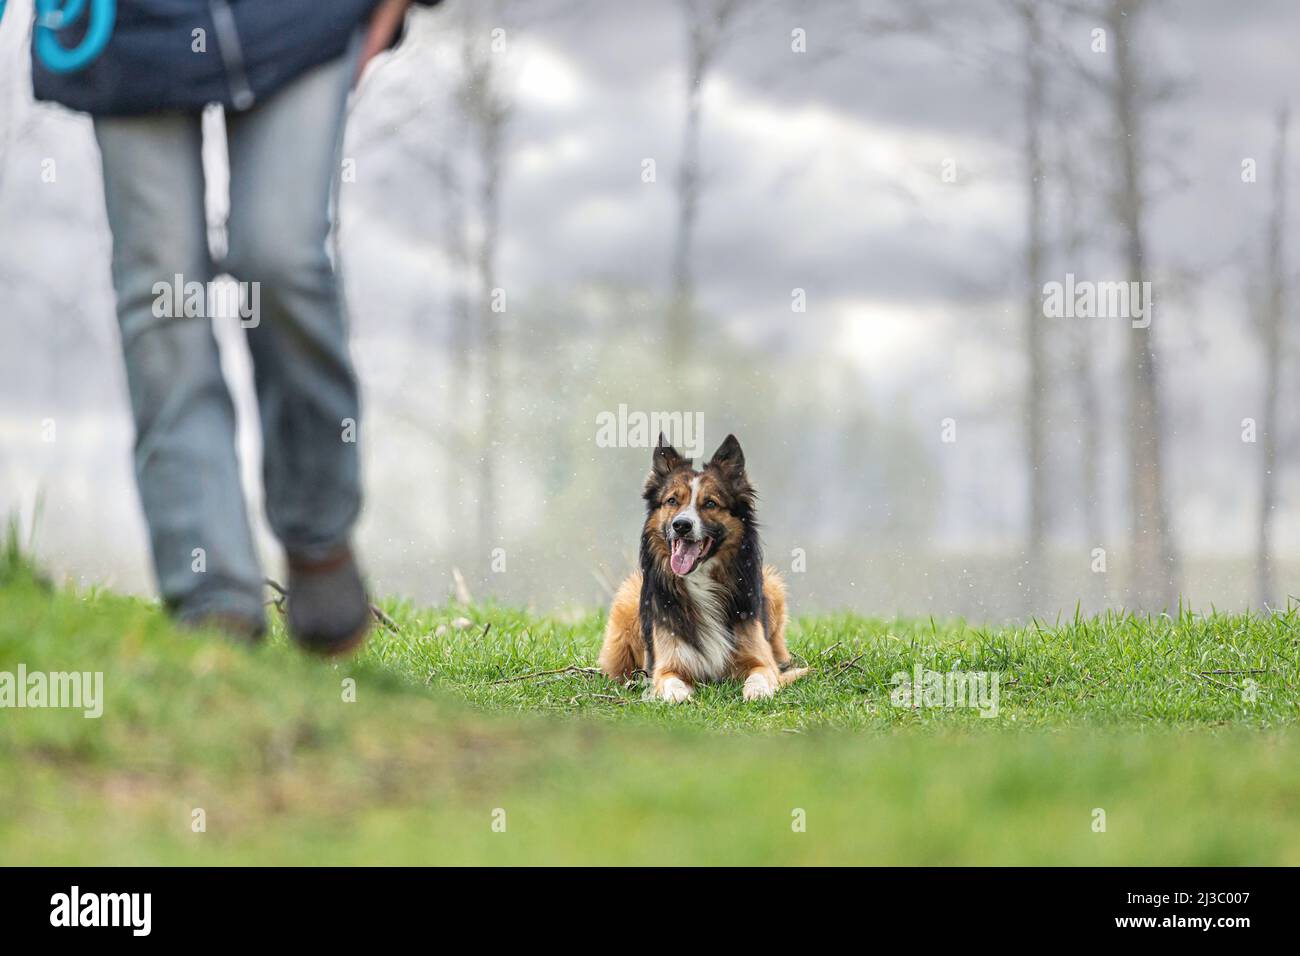 Hunde und Schlechtwettertage: Ein Border Collie Hund liegt an einem regnerischen Tag auf einer feuchten Wiese Stockfoto